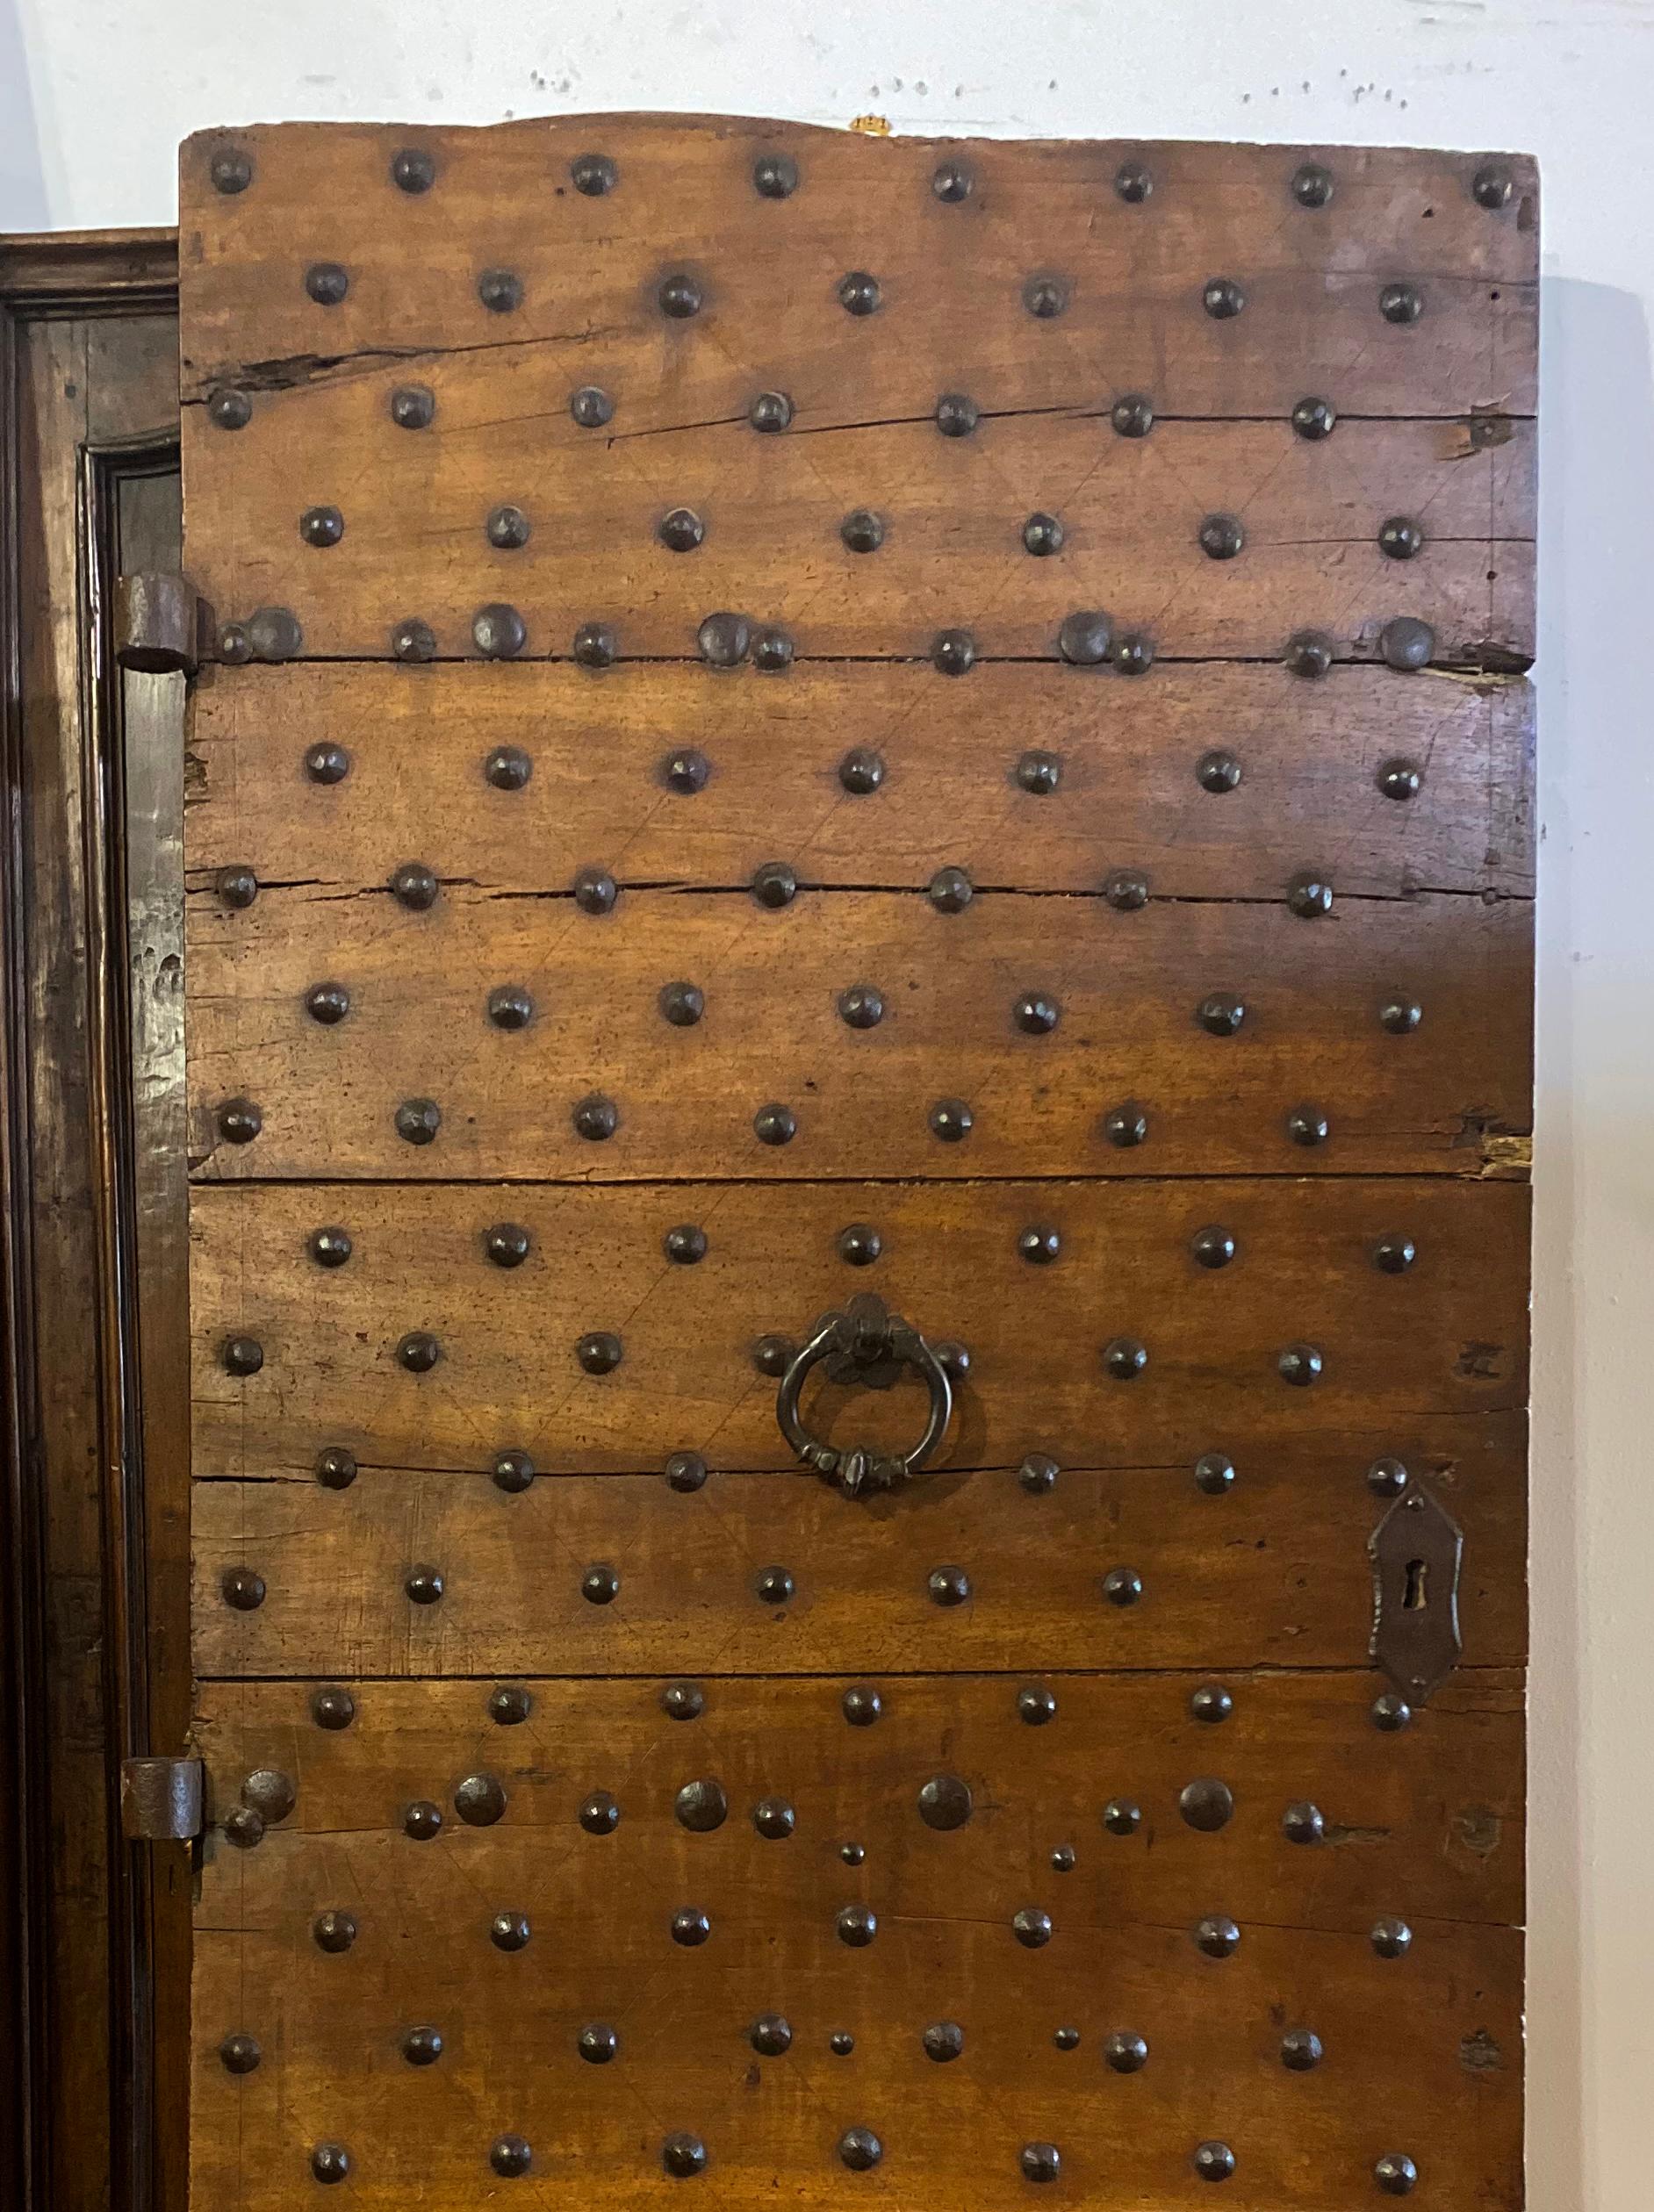 Stunning antique Italian door with original iron hardware.

Measurements: 40.5